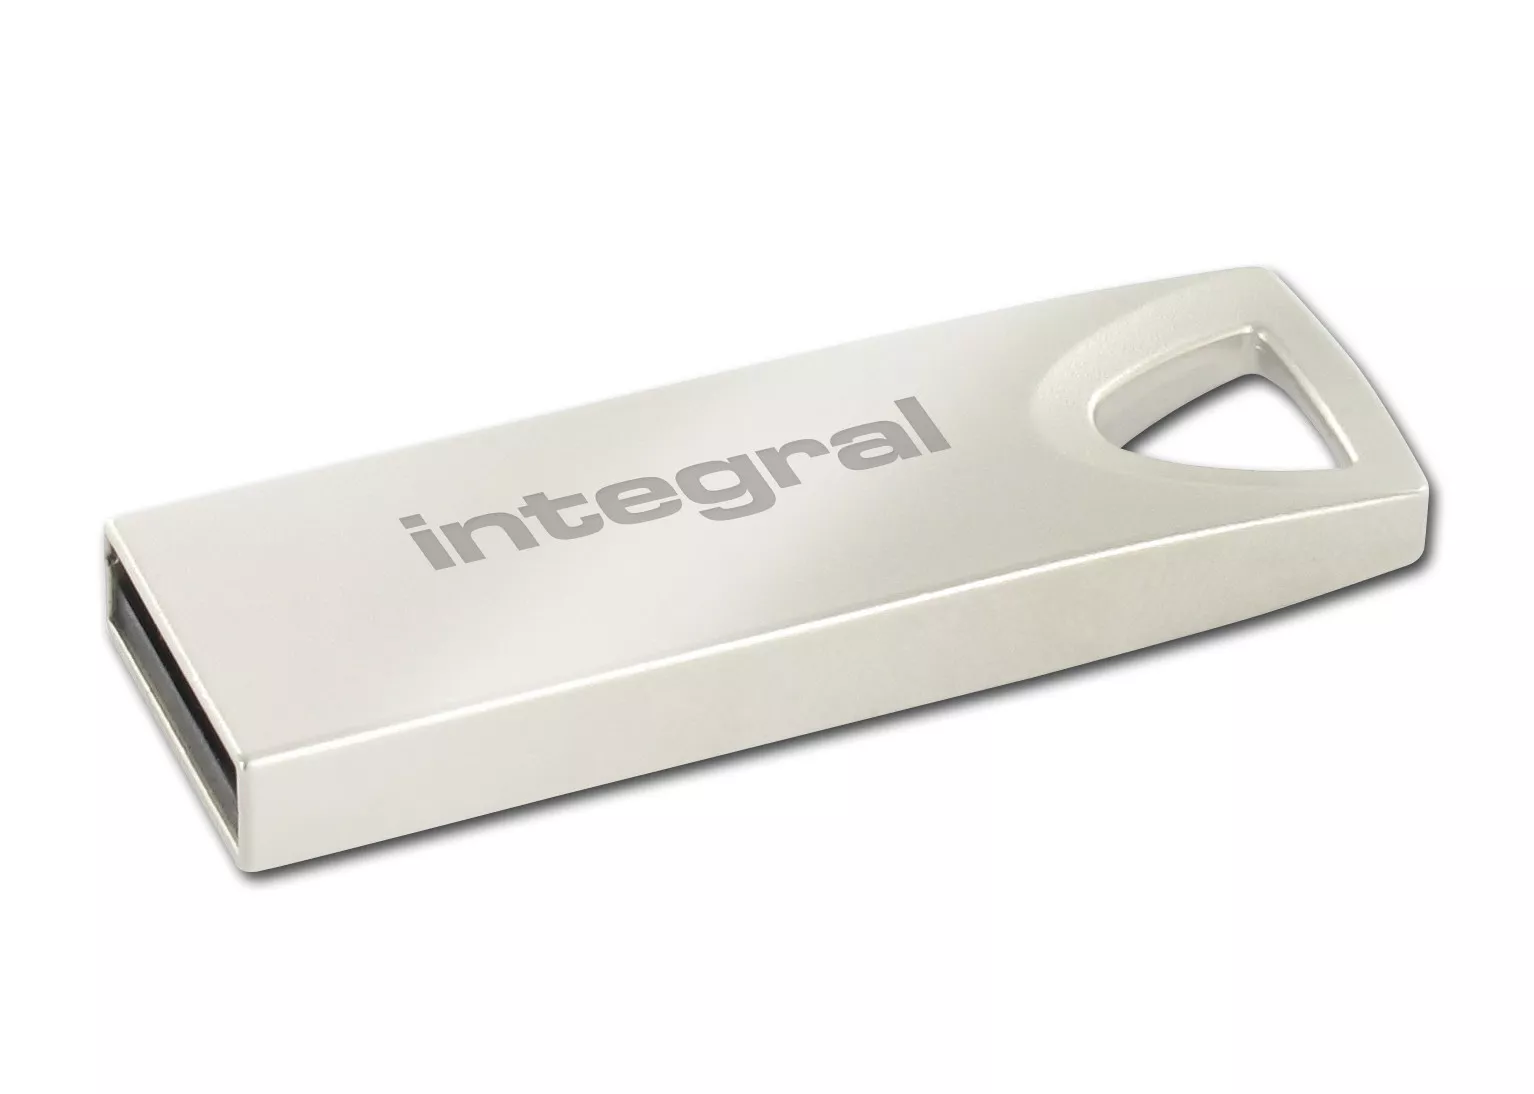 Achat Integral 16GB USB2.0 DRIVE ARC METAL INTEGRAL et autres produits de la marque Integral